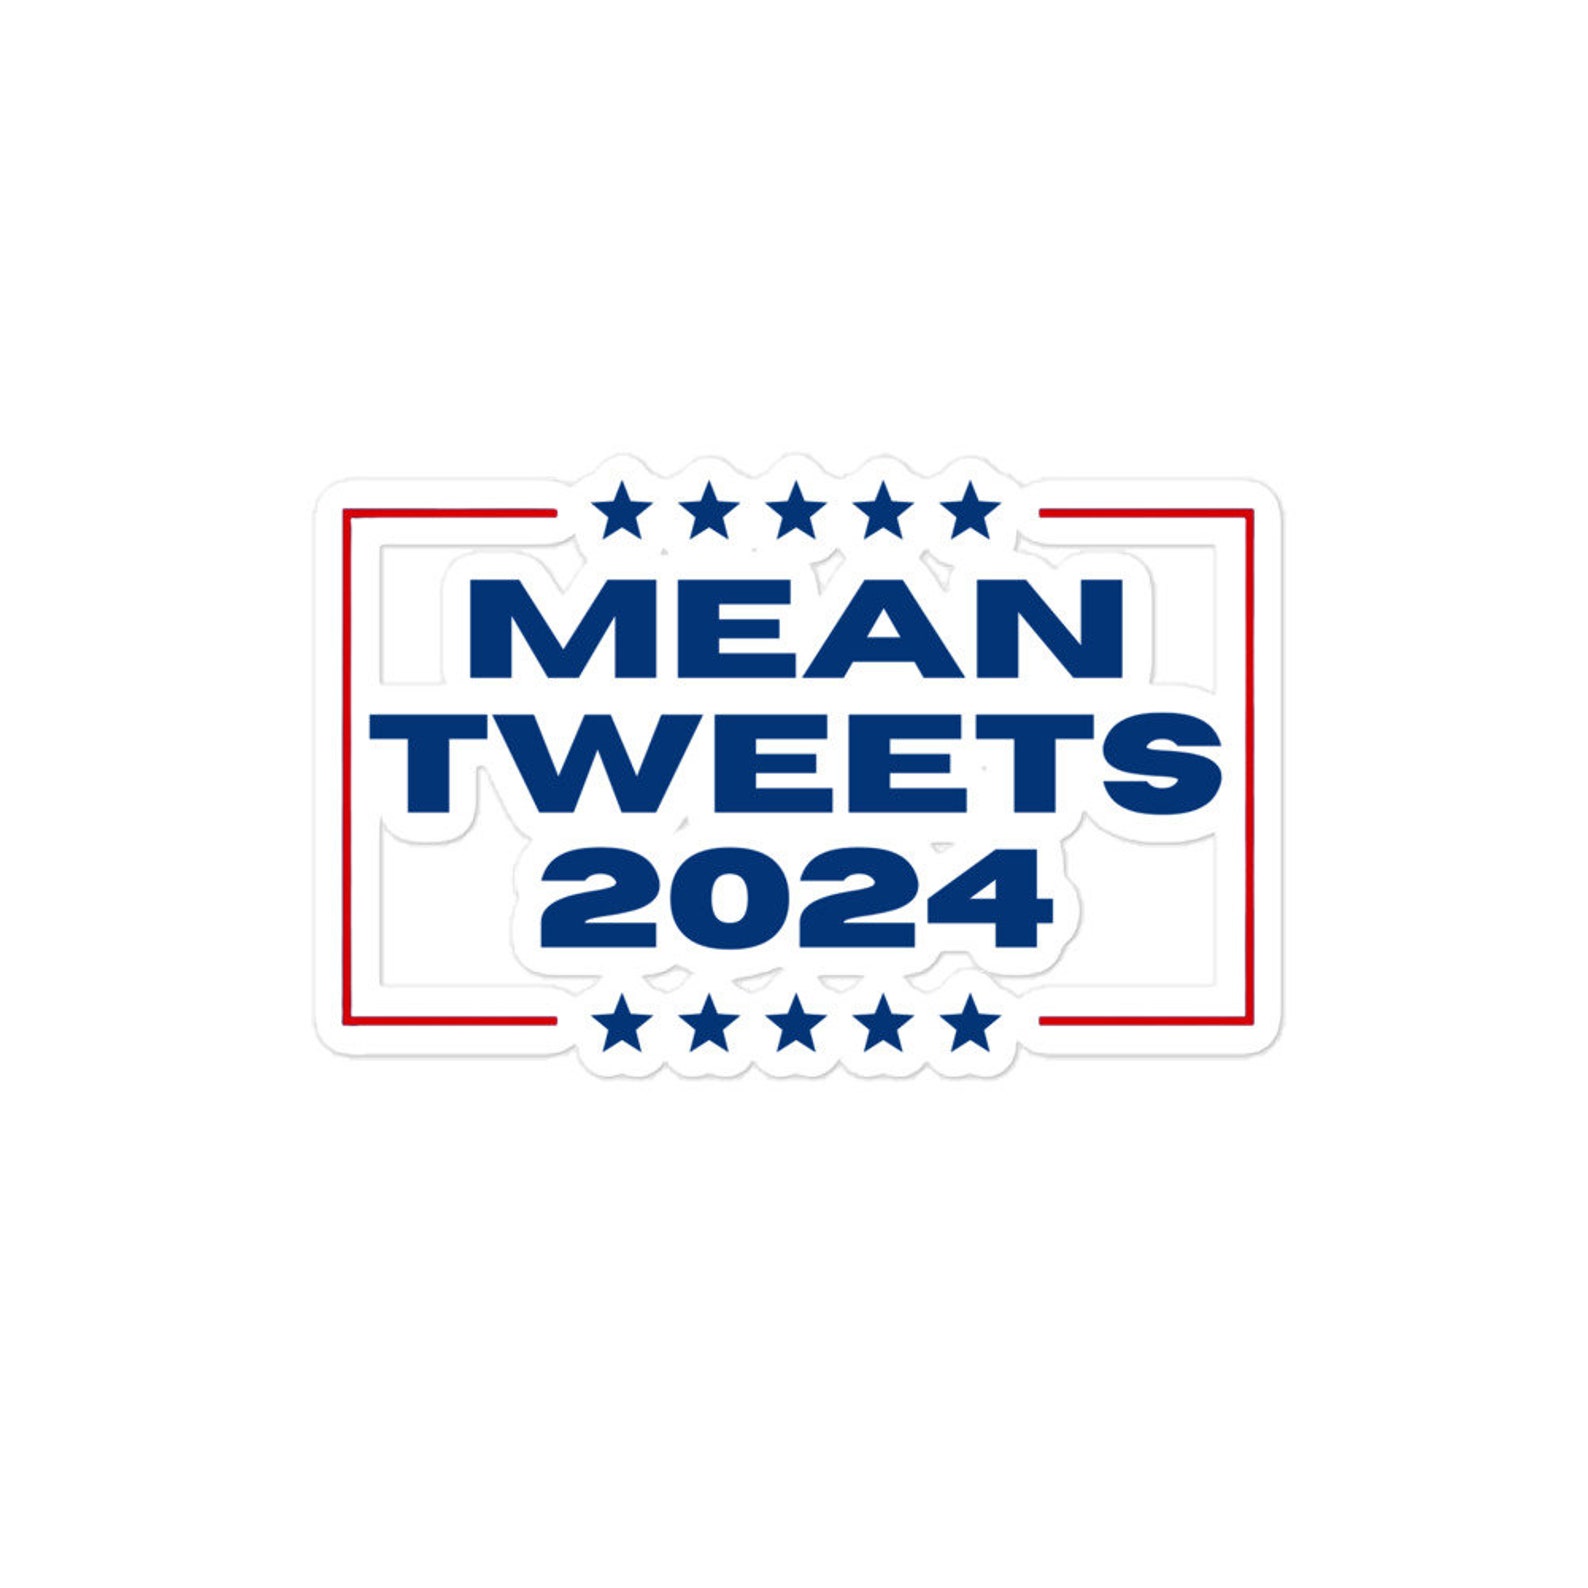 Mean Tweets 2024 Sticker Trump Sticker Car Sticker Etsy